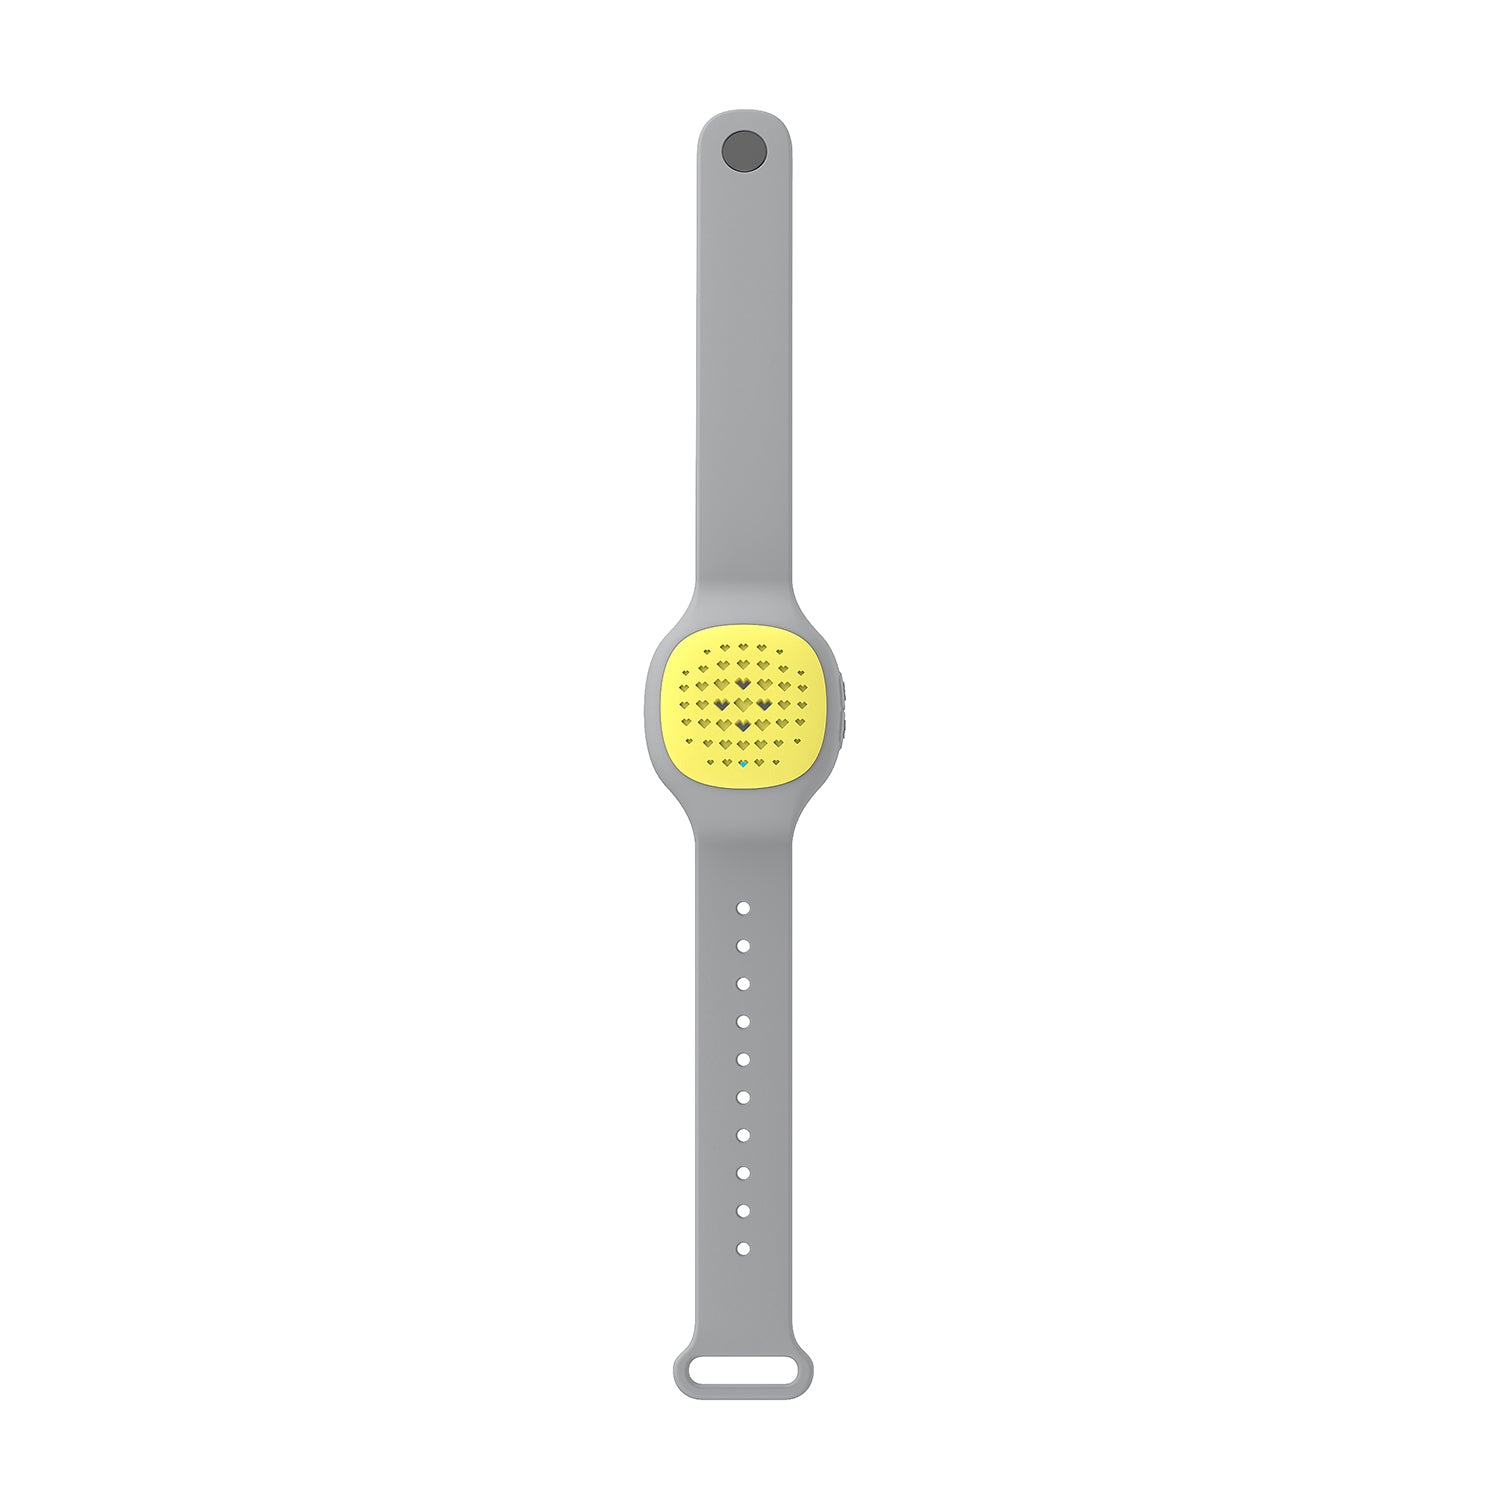 HAVIT W10 Rechargeable Mosquito Repellent Bracelet for Indoor Outdoor Protection